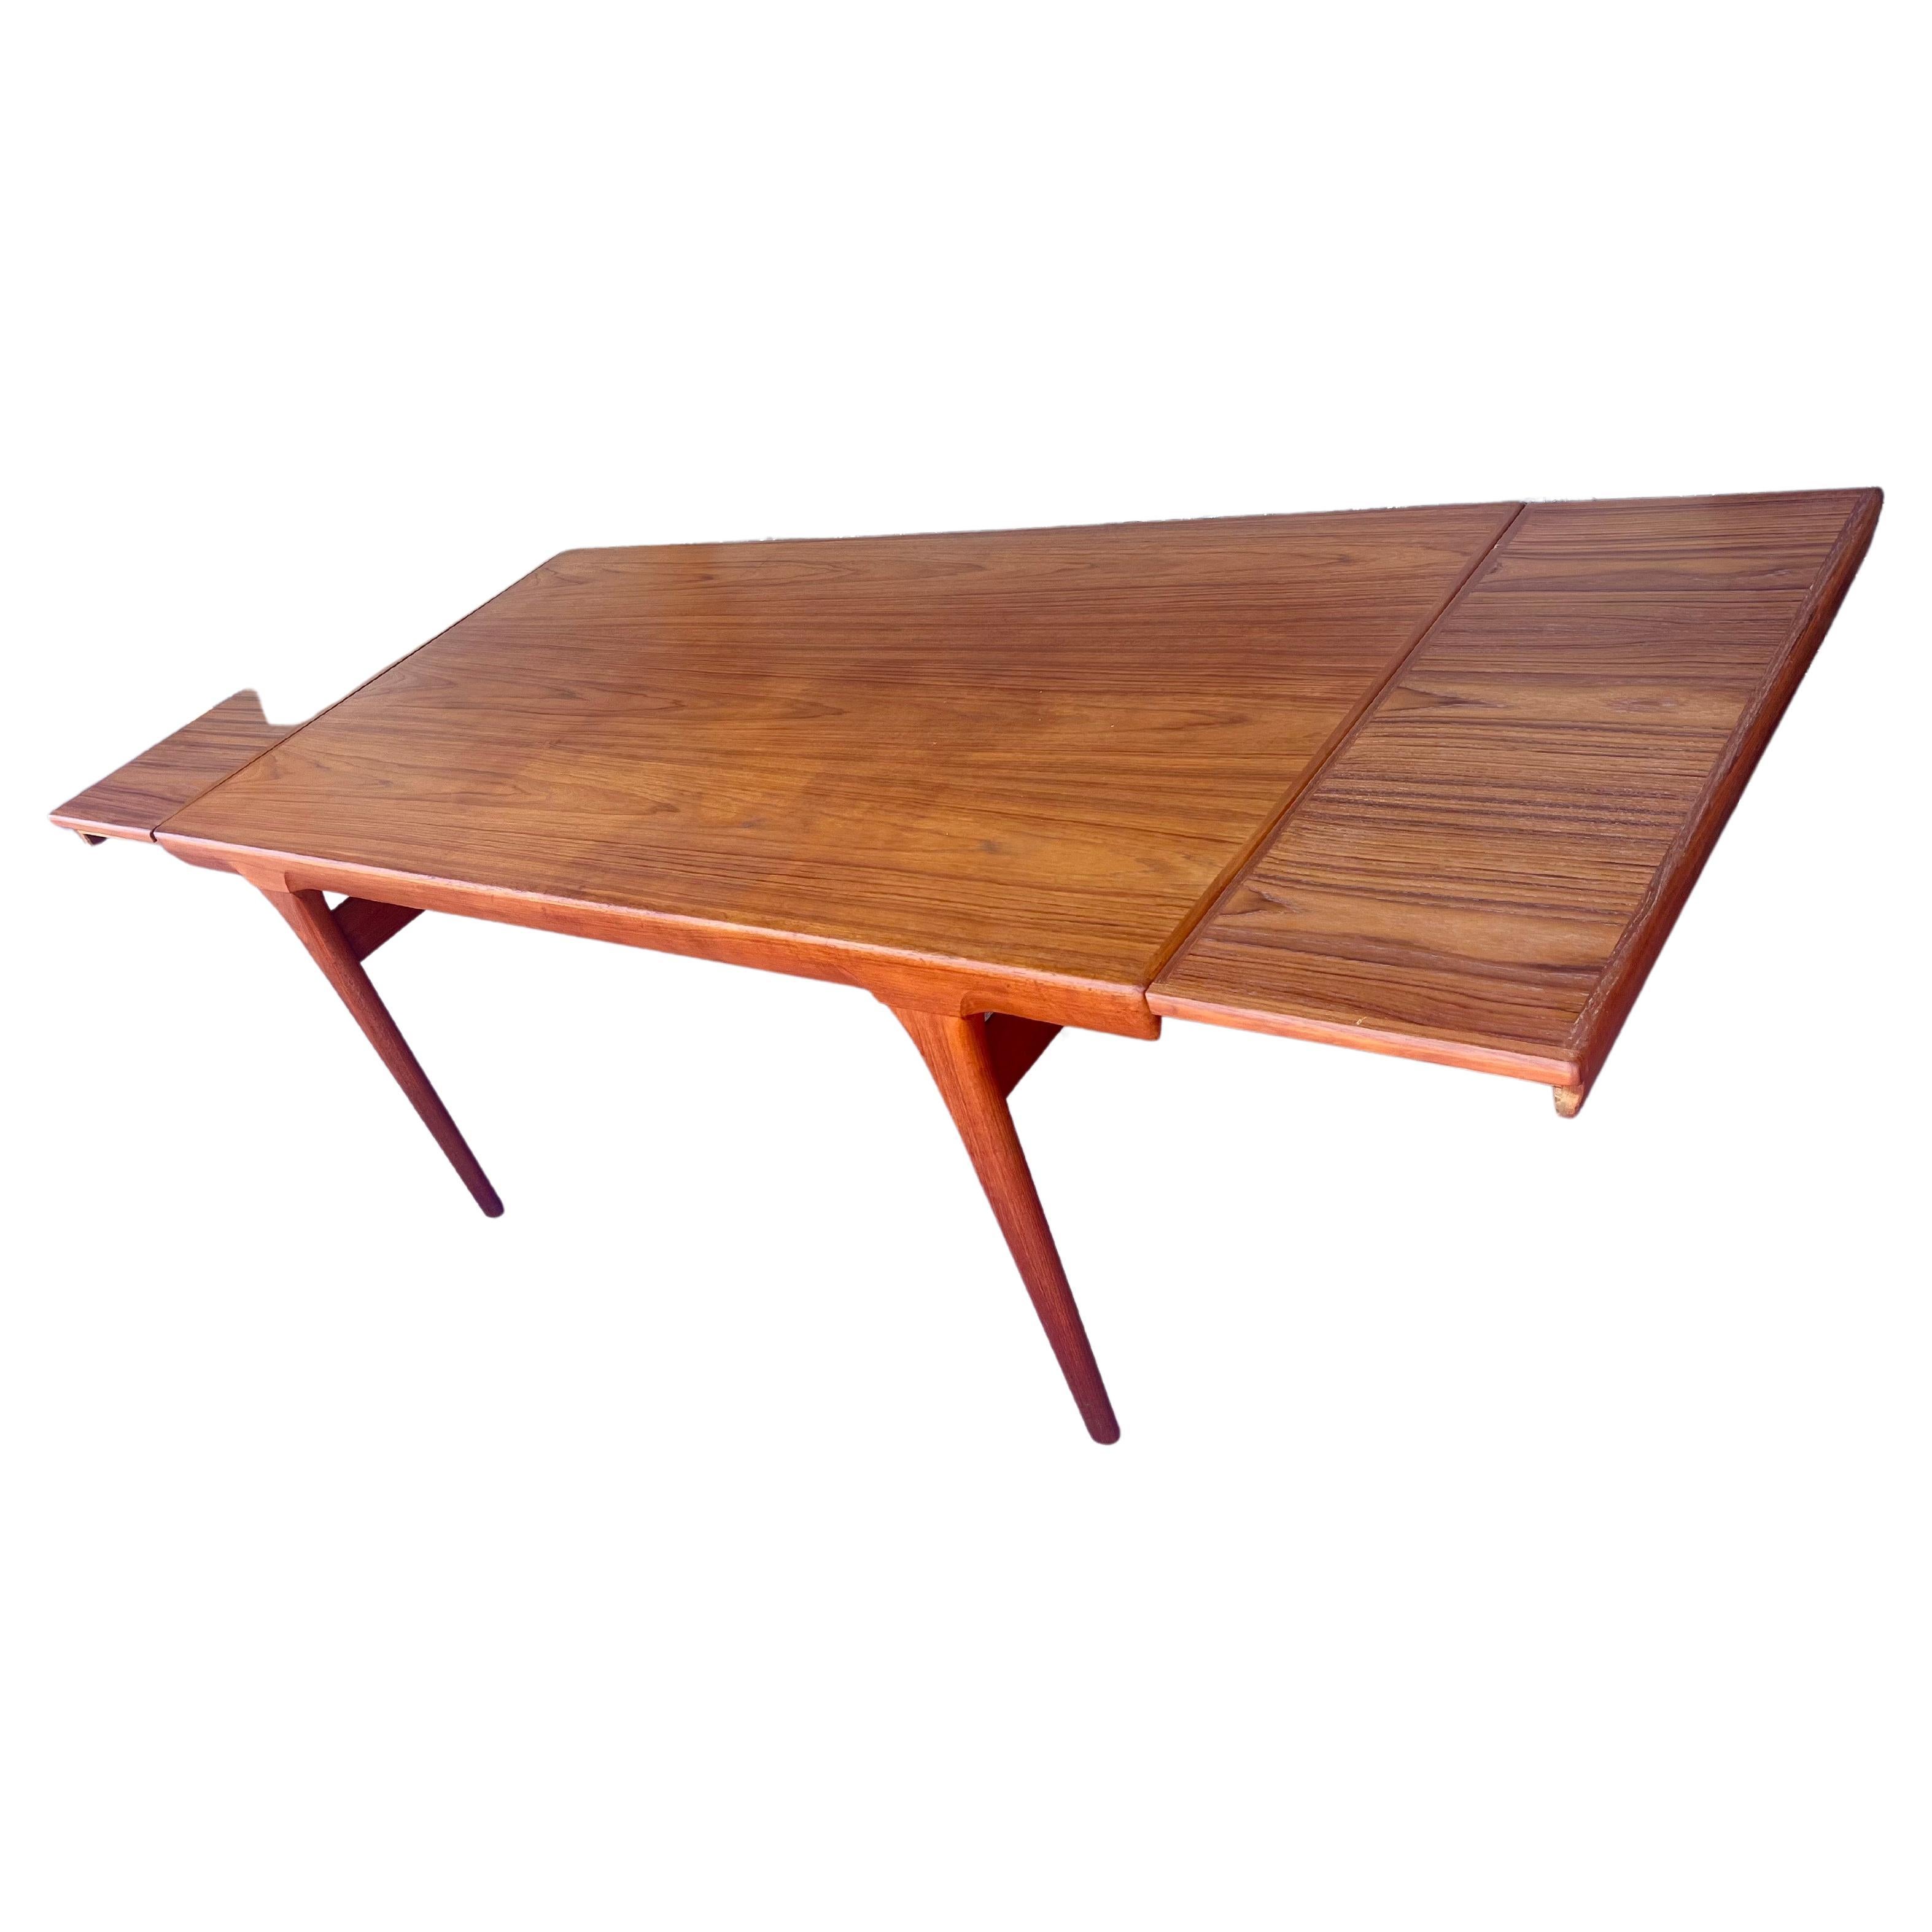 Magnifique table en teck moderne danois avec double feuilles qui se cachent sous le dessus de table, chaque côté se retire et la table repose sur le dessus et se ferme, cette pièce est en très bon état, la table fait 68' de long sans les extensions